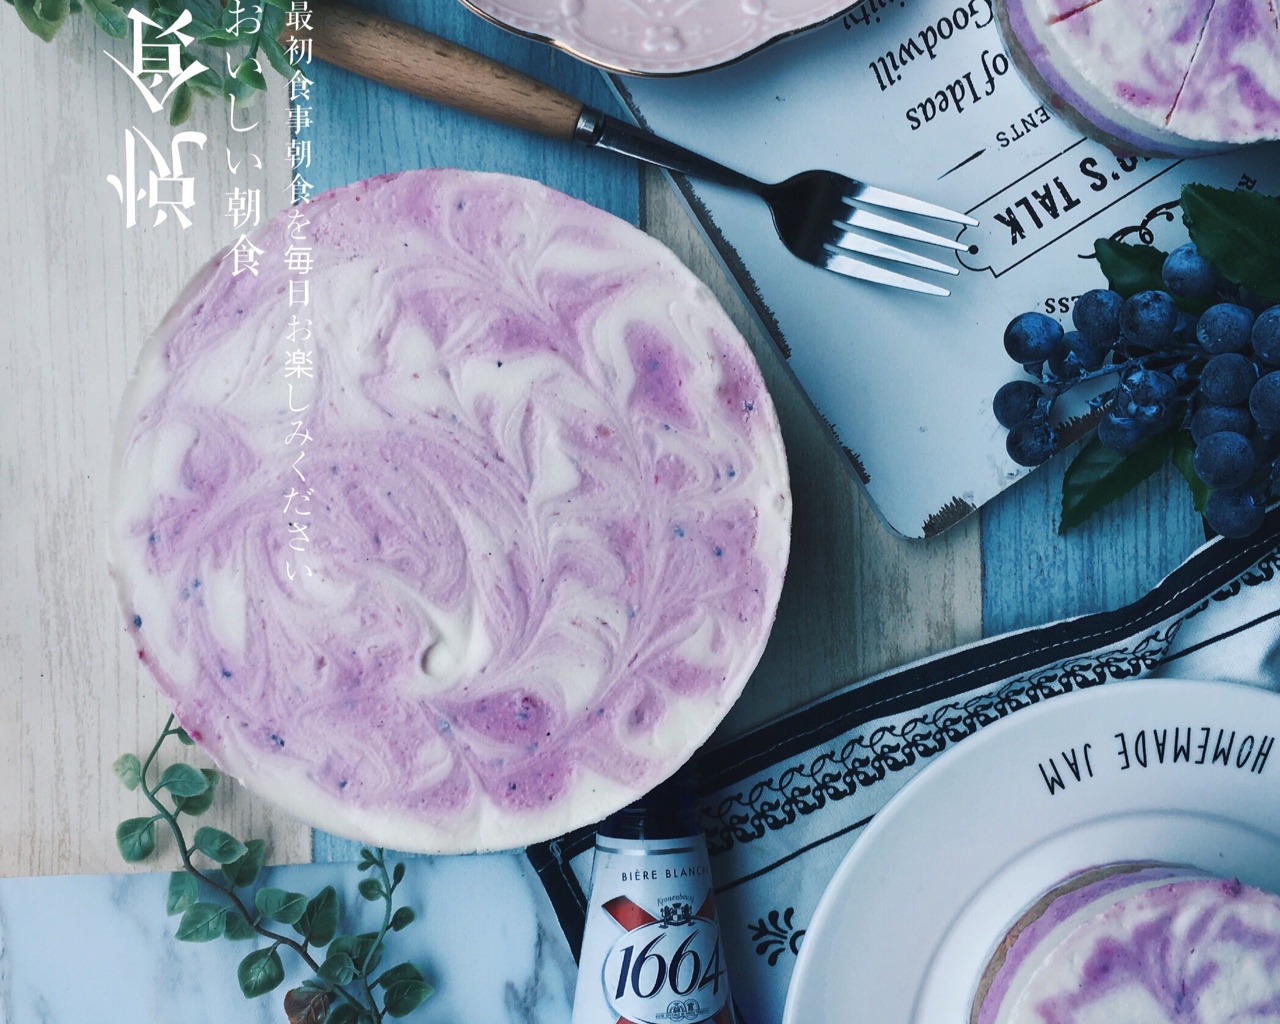 大理石蓝莓酸奶慕斯 | Blueberries & Yogurt   Mousse的做法